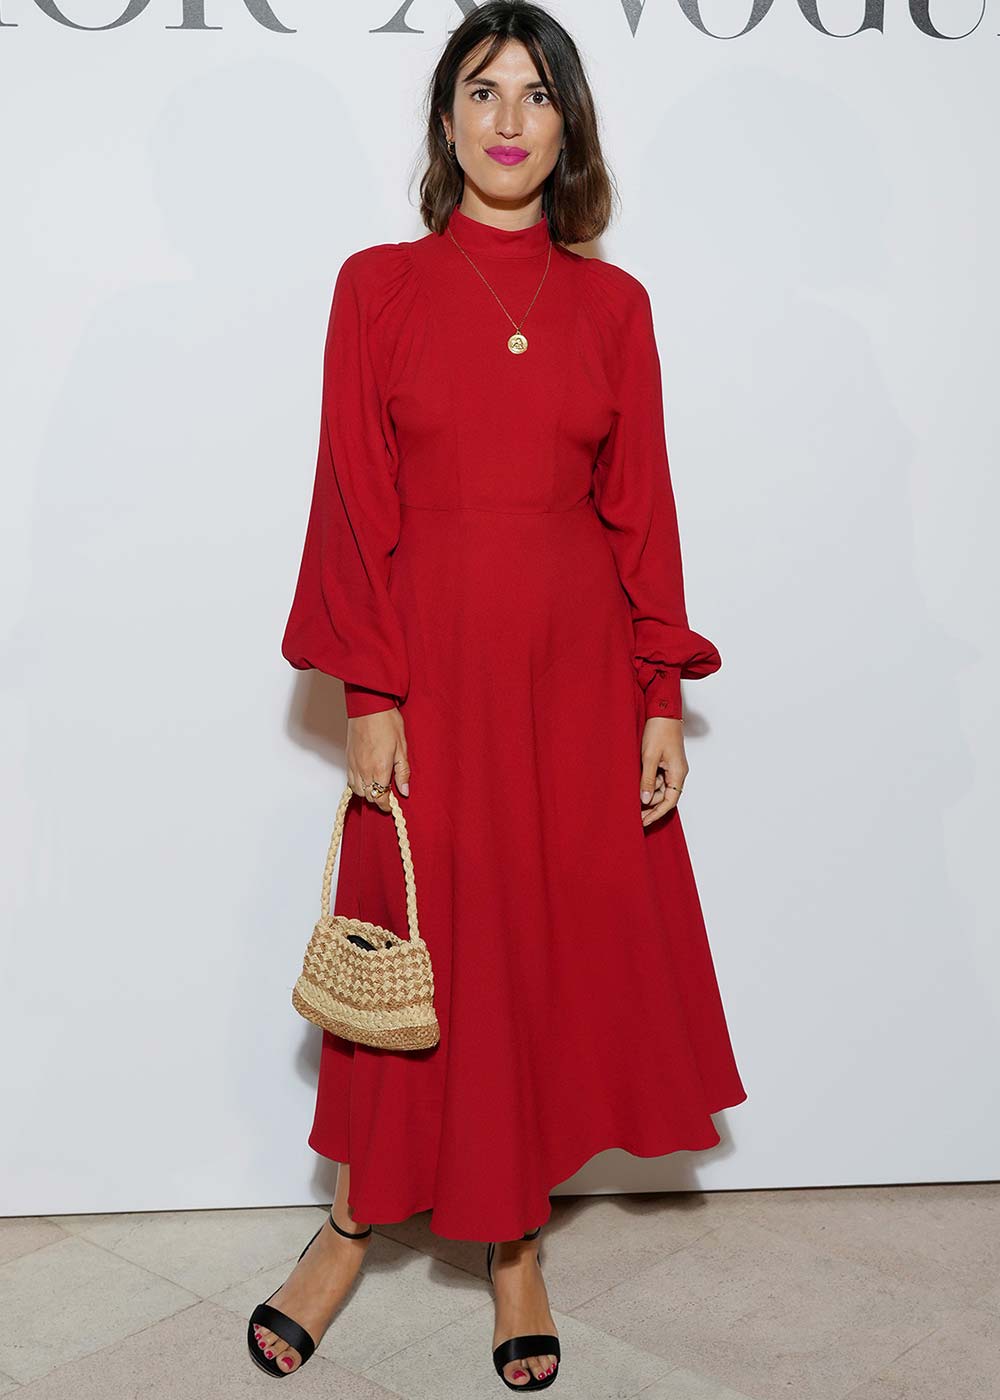 Jeanne Damas Cannes 2021 abito Dior